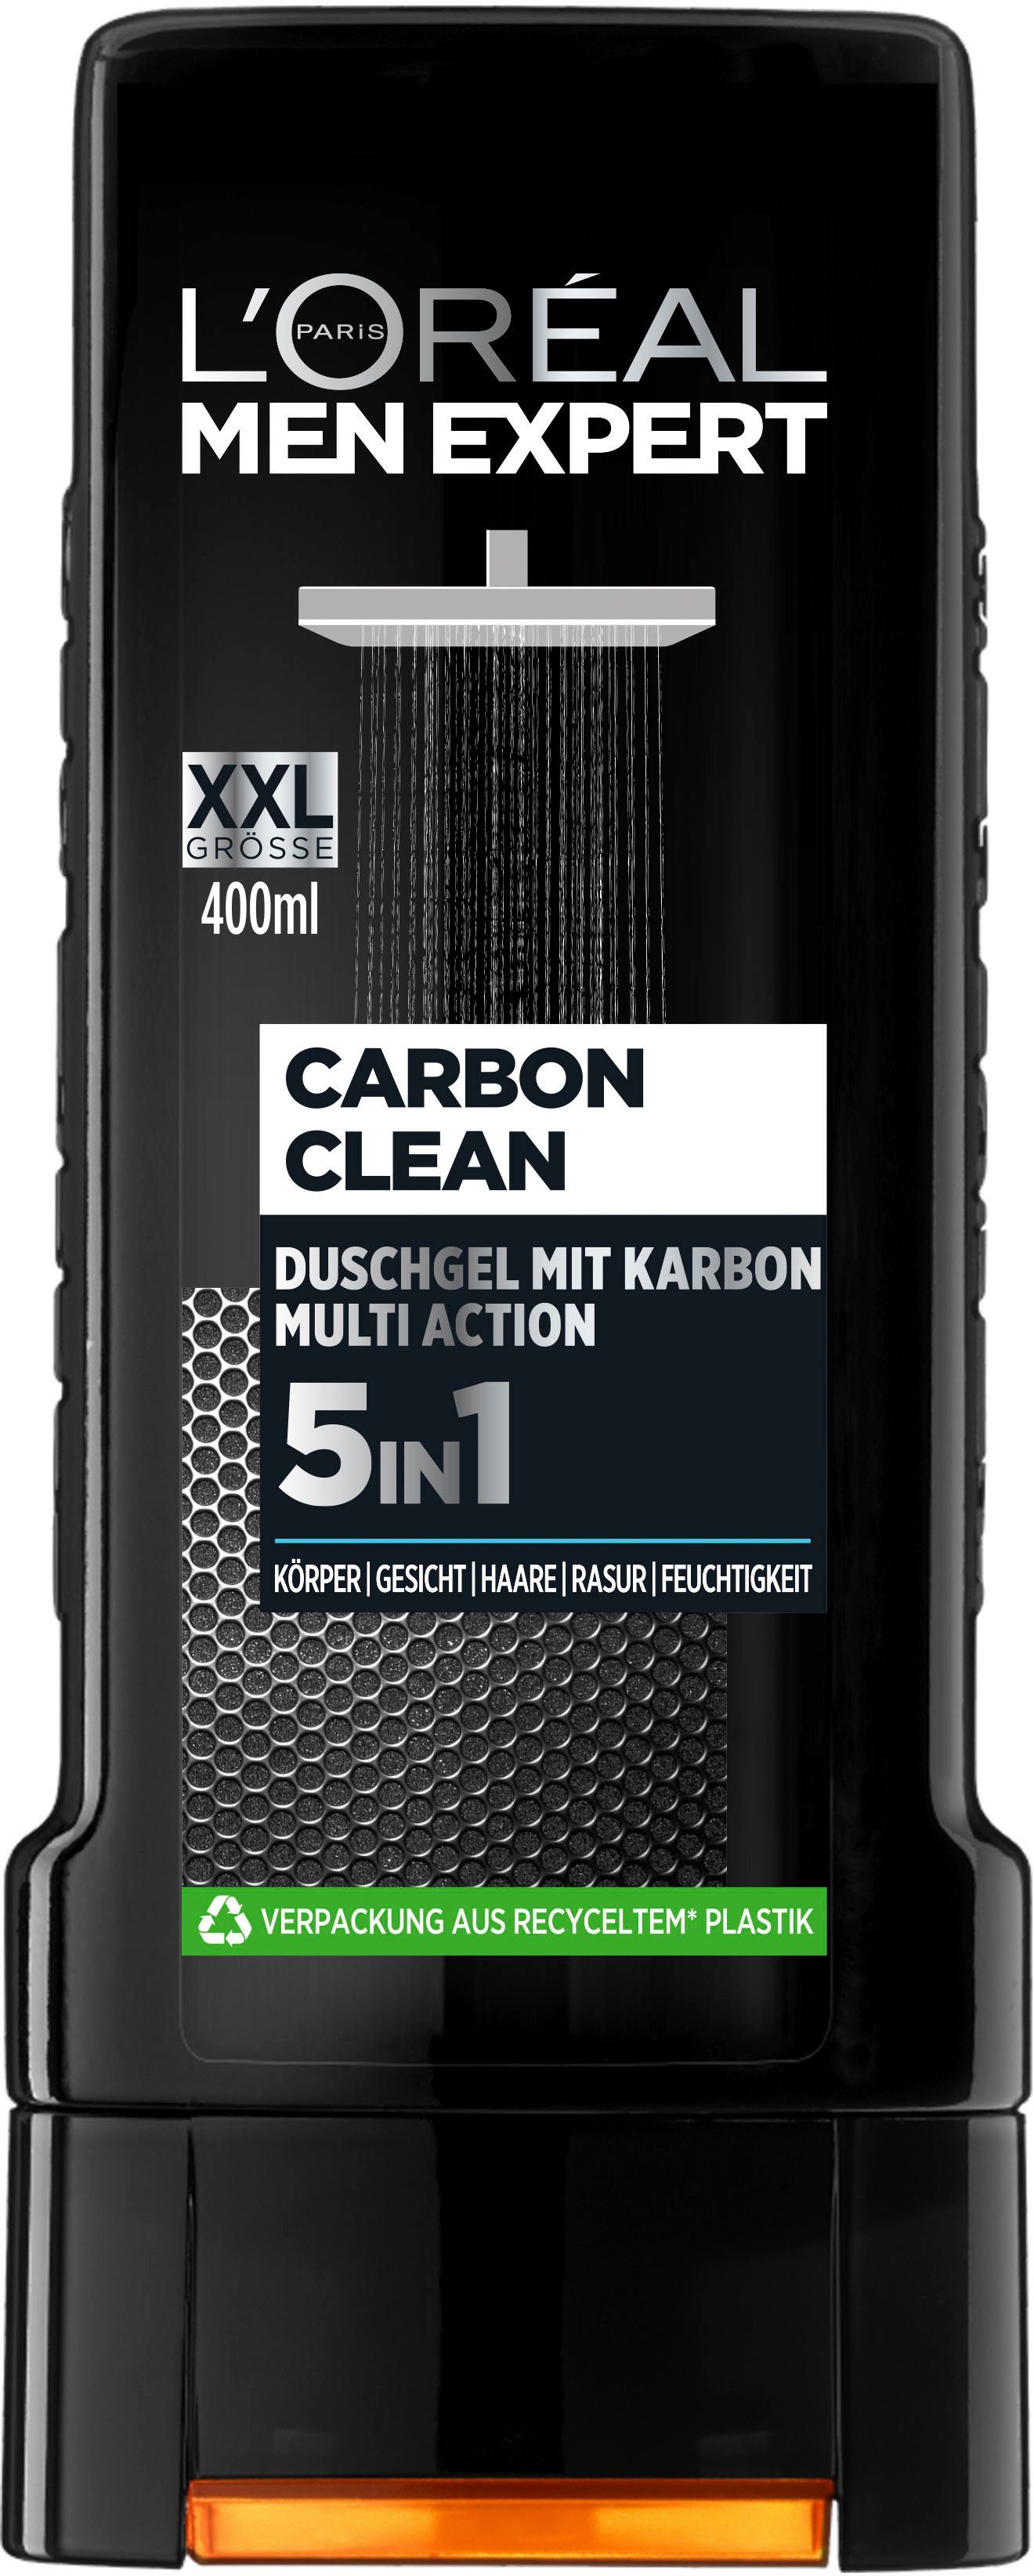 EXPERT Clean MEN 5in1 L'ORÉAL Duschgel PARIS Carbon XXL